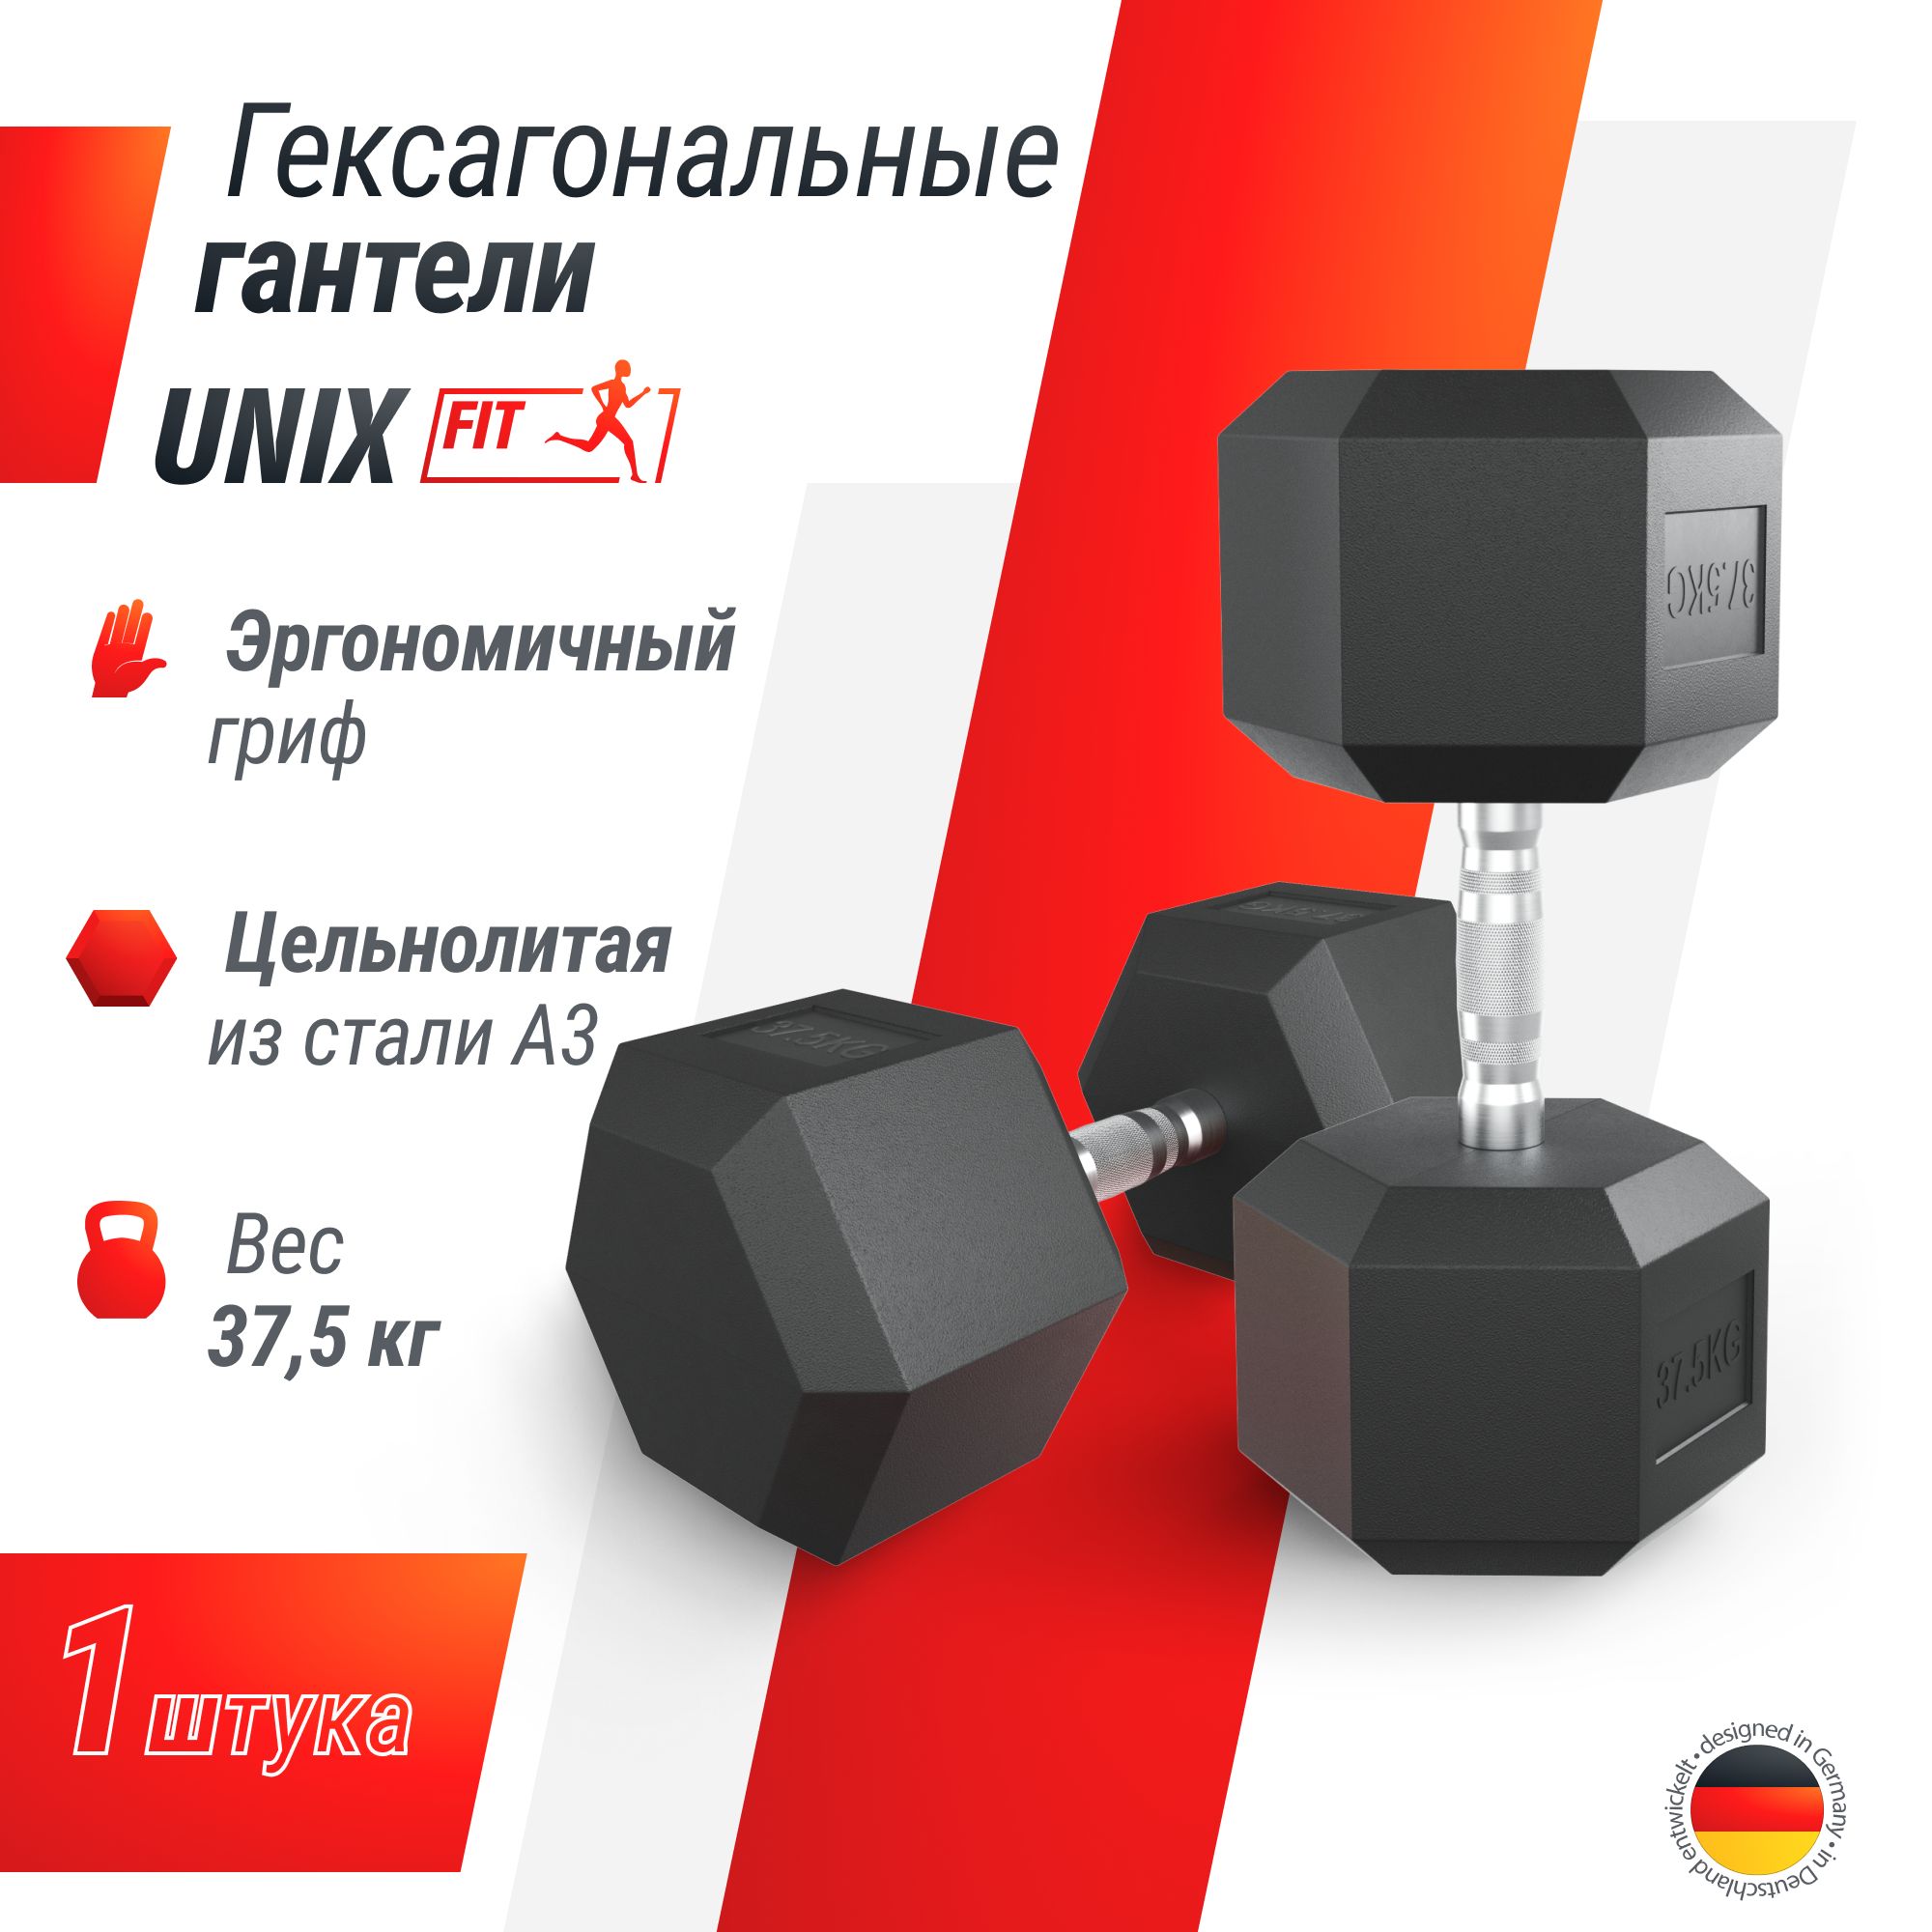 Гантель гексагональная UNIX Fit обрезиненная 37,5 кг шт